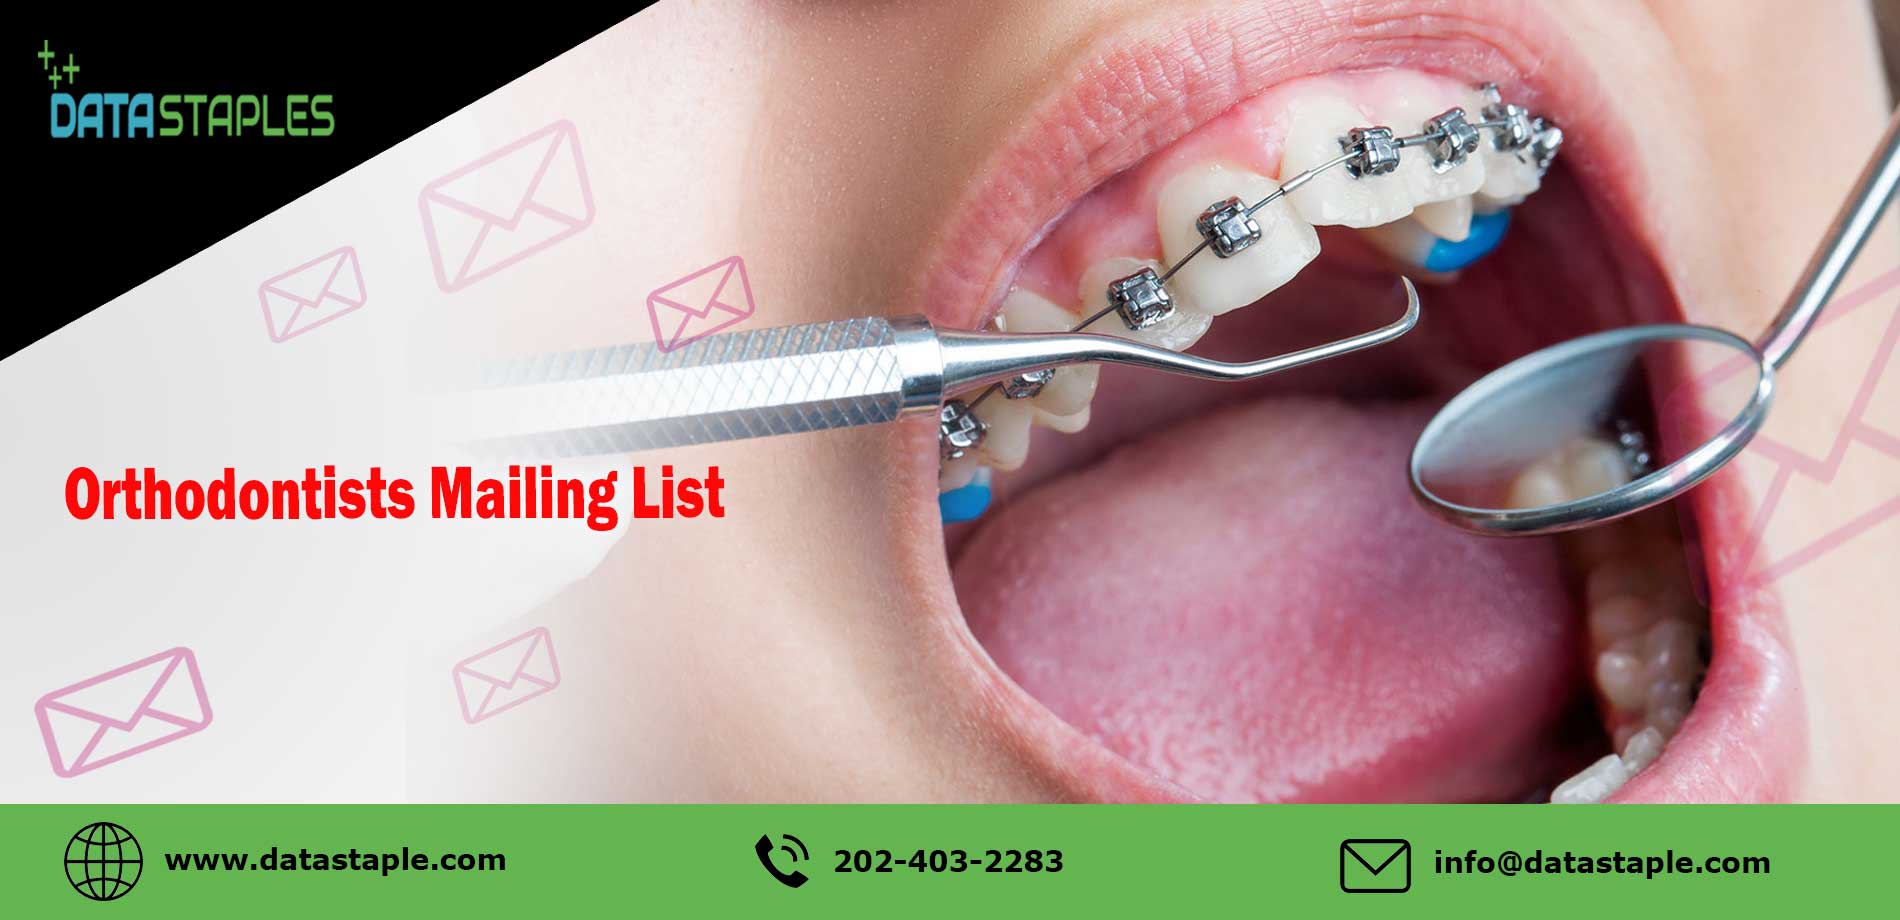 Orthodontists Email List | DataStaples